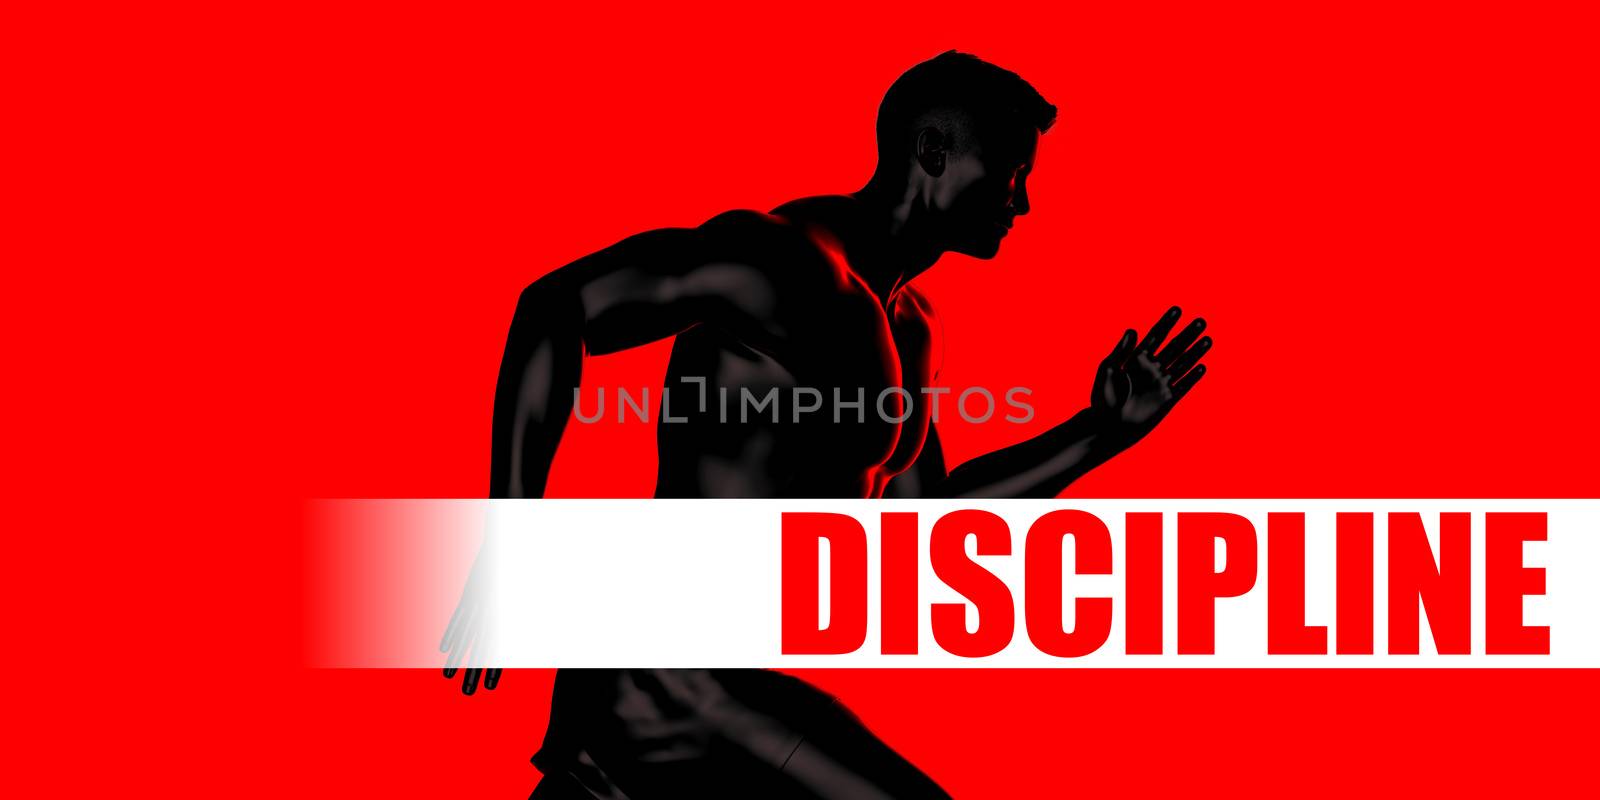 Discipline Concept by kentoh